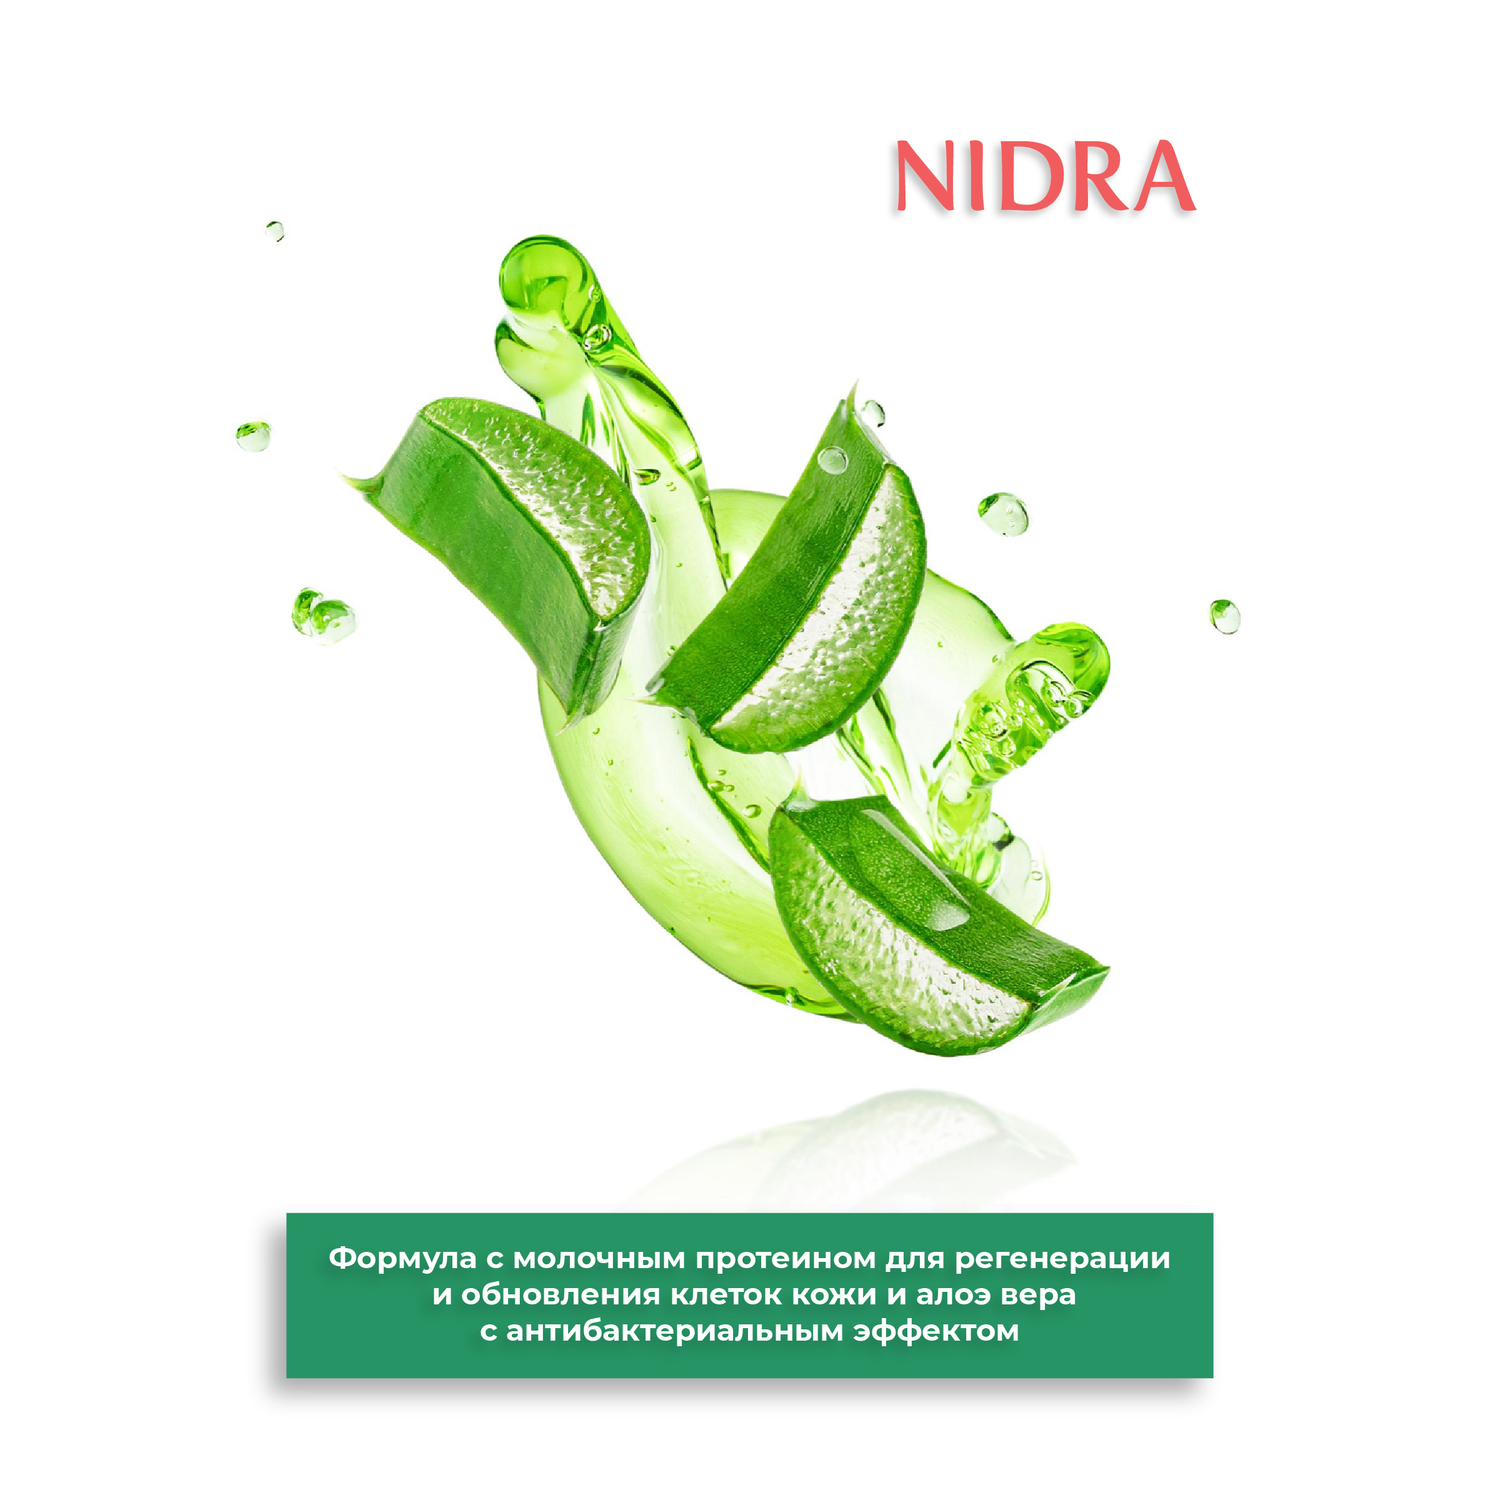 Гель для интимной гигиены Nidra освежающий с молочными протеинами и алоэ 300 мл - фото 3